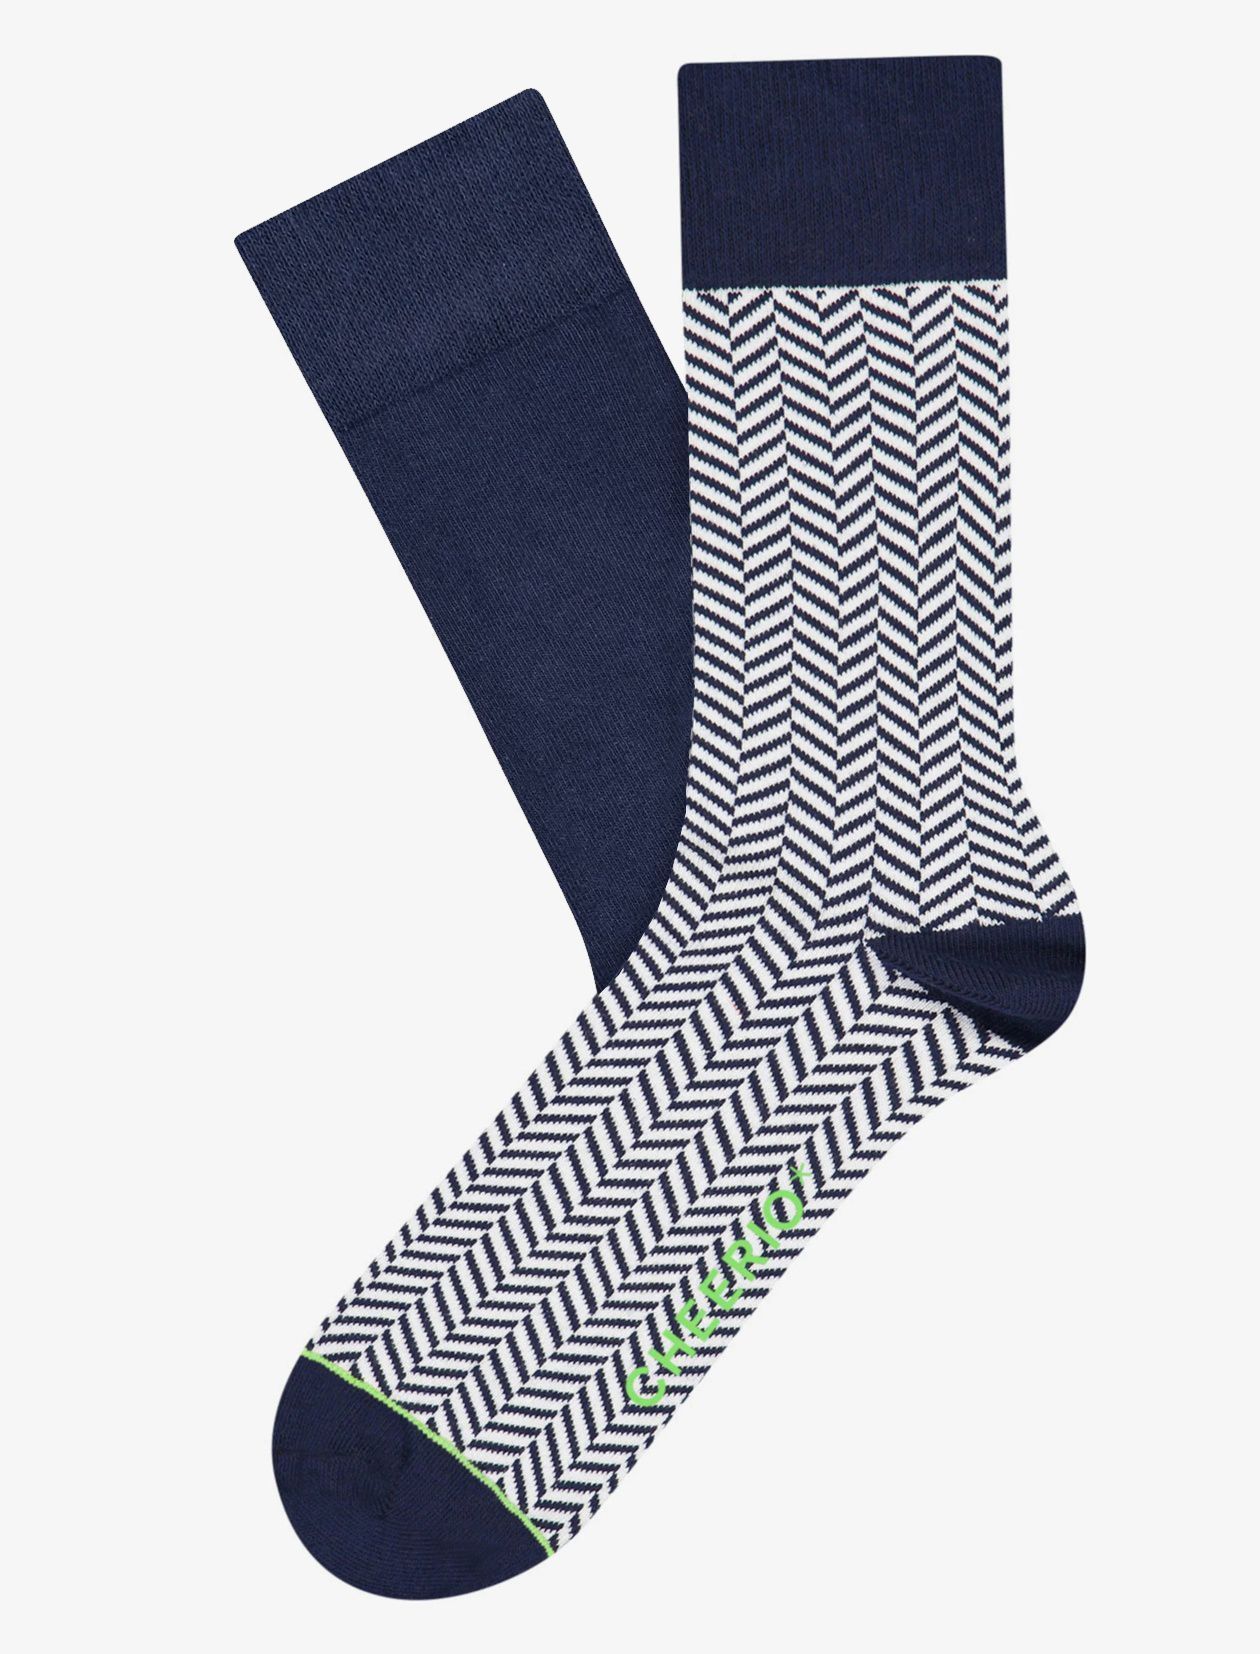 Einfarbige Socken | Bunte Socken in vielen Farbvarianten - Seite 2 von 5 |  Sockenduo